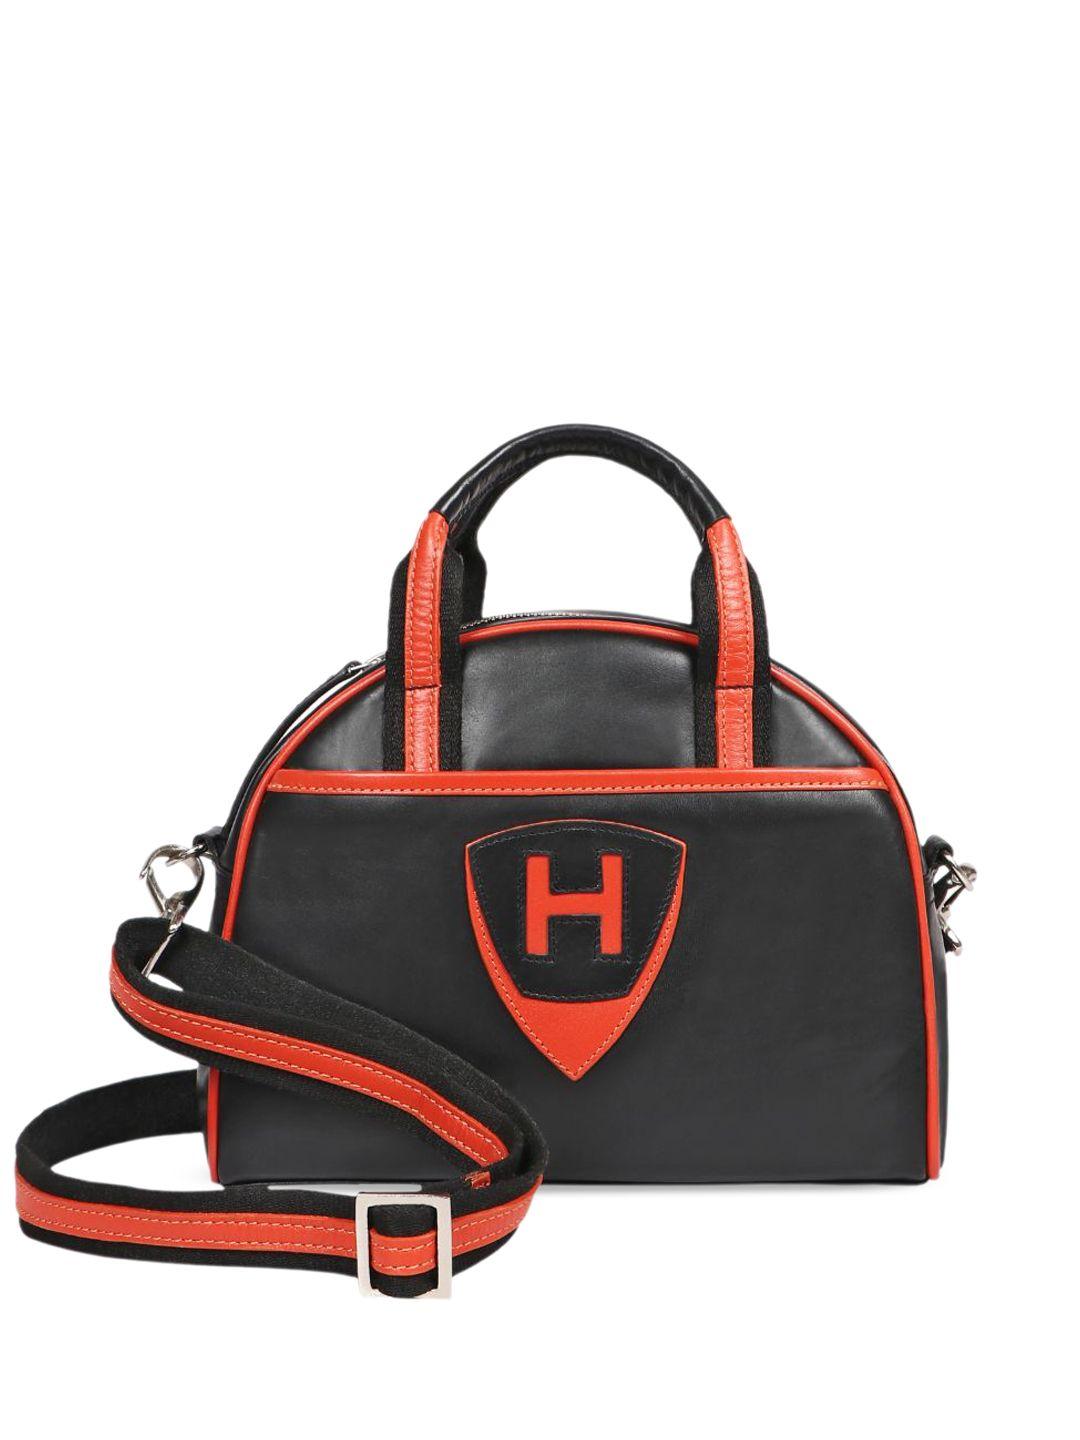 hidesign-leather-duffel-bag